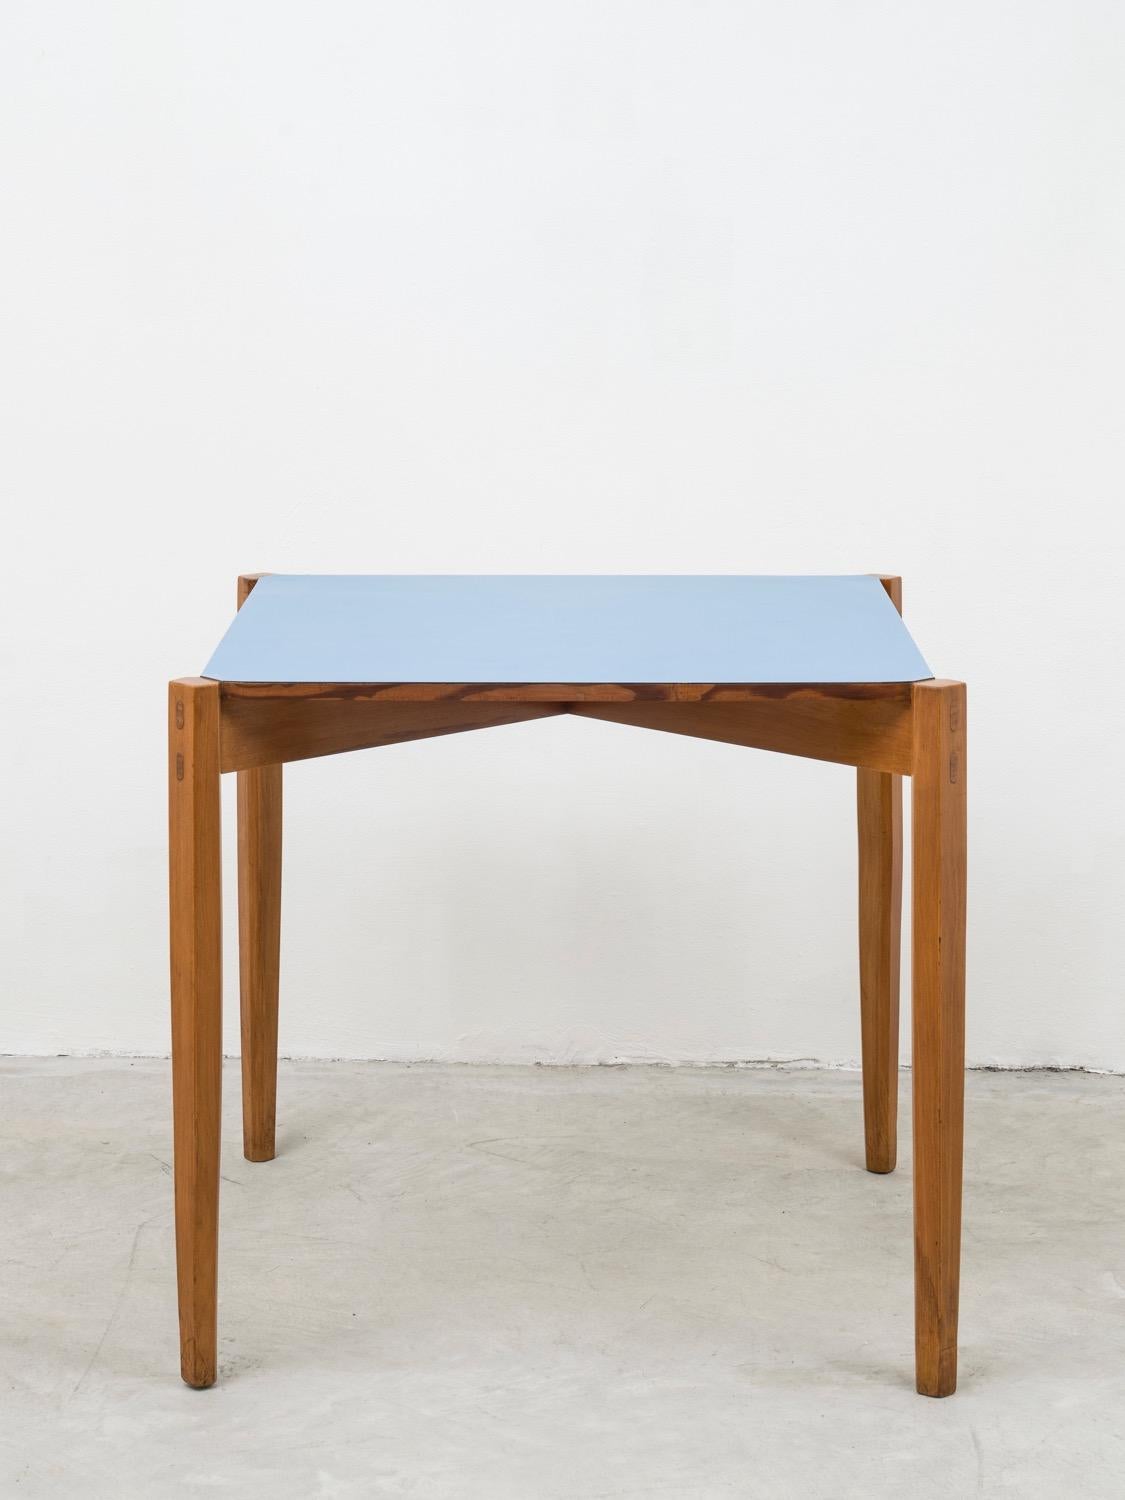 Dieser außergewöhnliche quadratische Tisch, der sowohl als Spiel- als auch als Esstisch verwendet werden kann, ist ein Einzelstück, das unter der Platte vom Künstler und Designer Giulio Alchini signiert ist. Die Verwendung eines solchen hellblauen